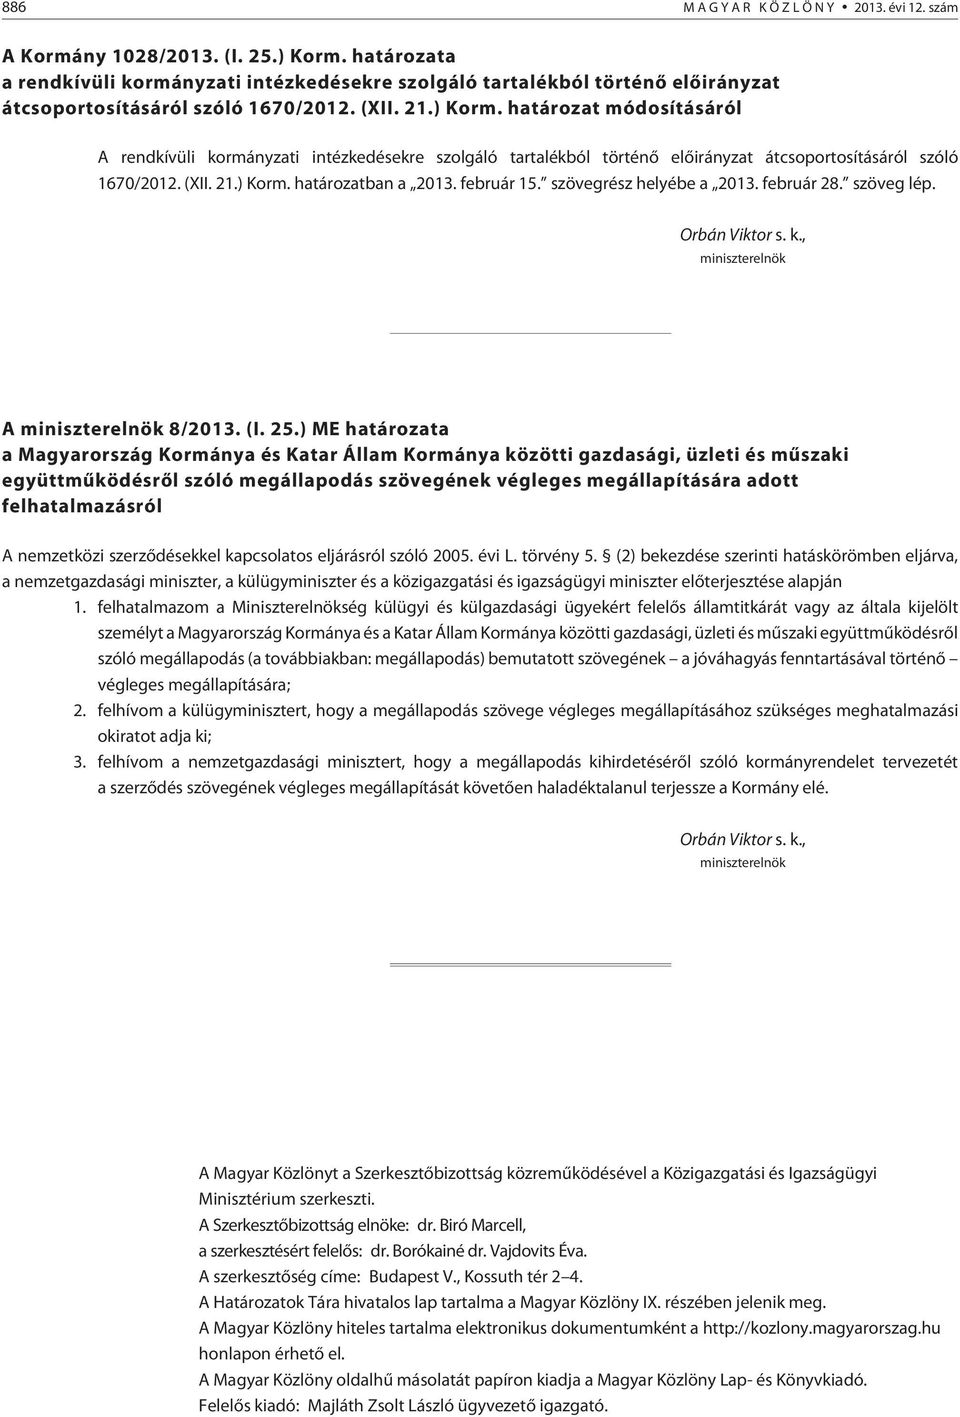 határozat módosításáról A rendkívüli kormányzati intézkedésekre szolgáló tartalékból történõ elõirányzat átcsoportosításáról szóló 1670/2012. (XII. 21.) Korm. határozatban a 2013. február 15.